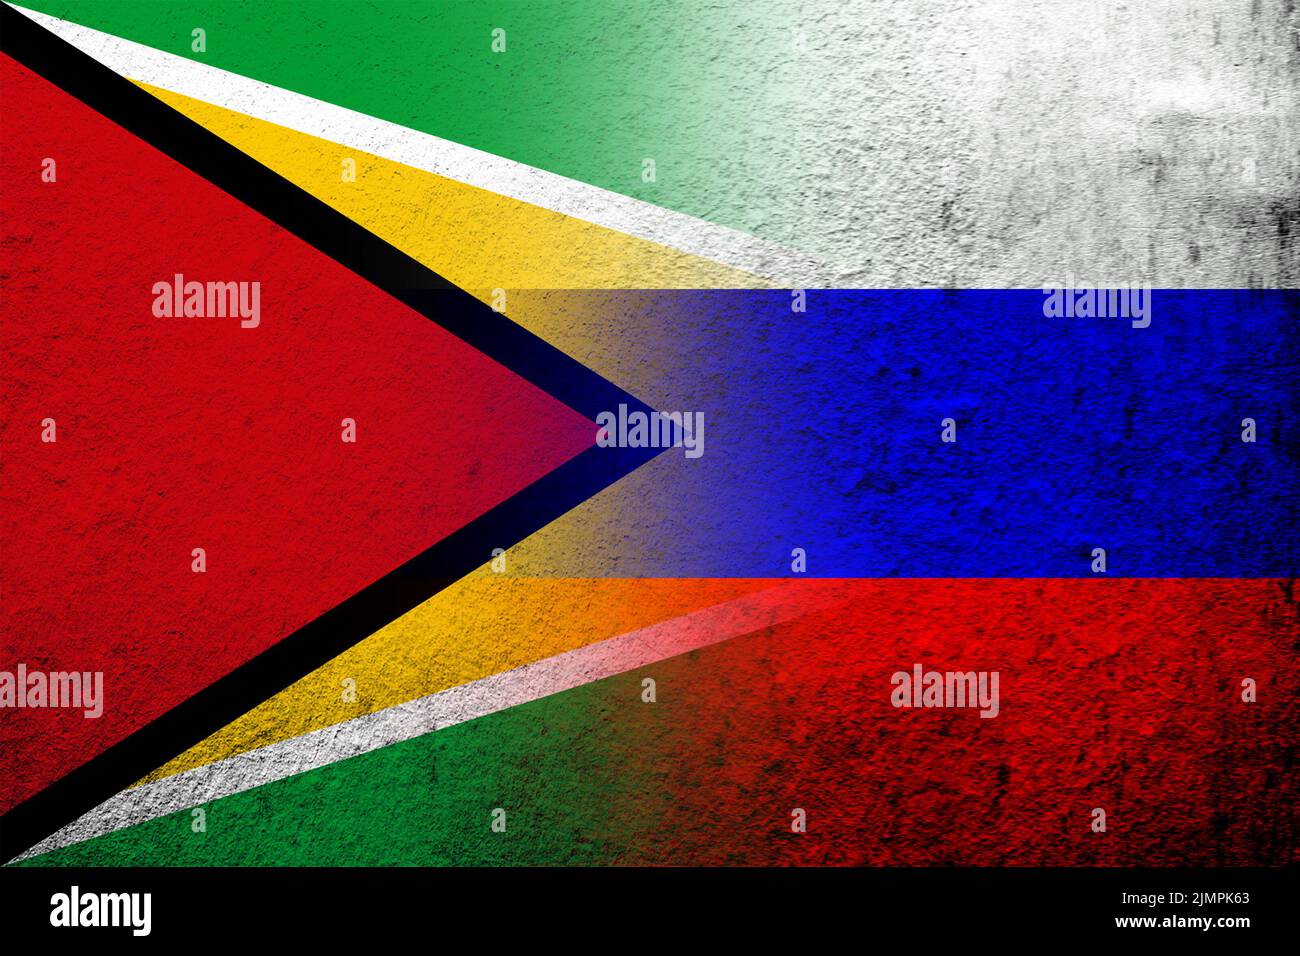 Nationalflagge der Russischen Föderation mit der Kooperativen Republik Guyana Nationalflagge . Grungen Hintergrund Stockfoto